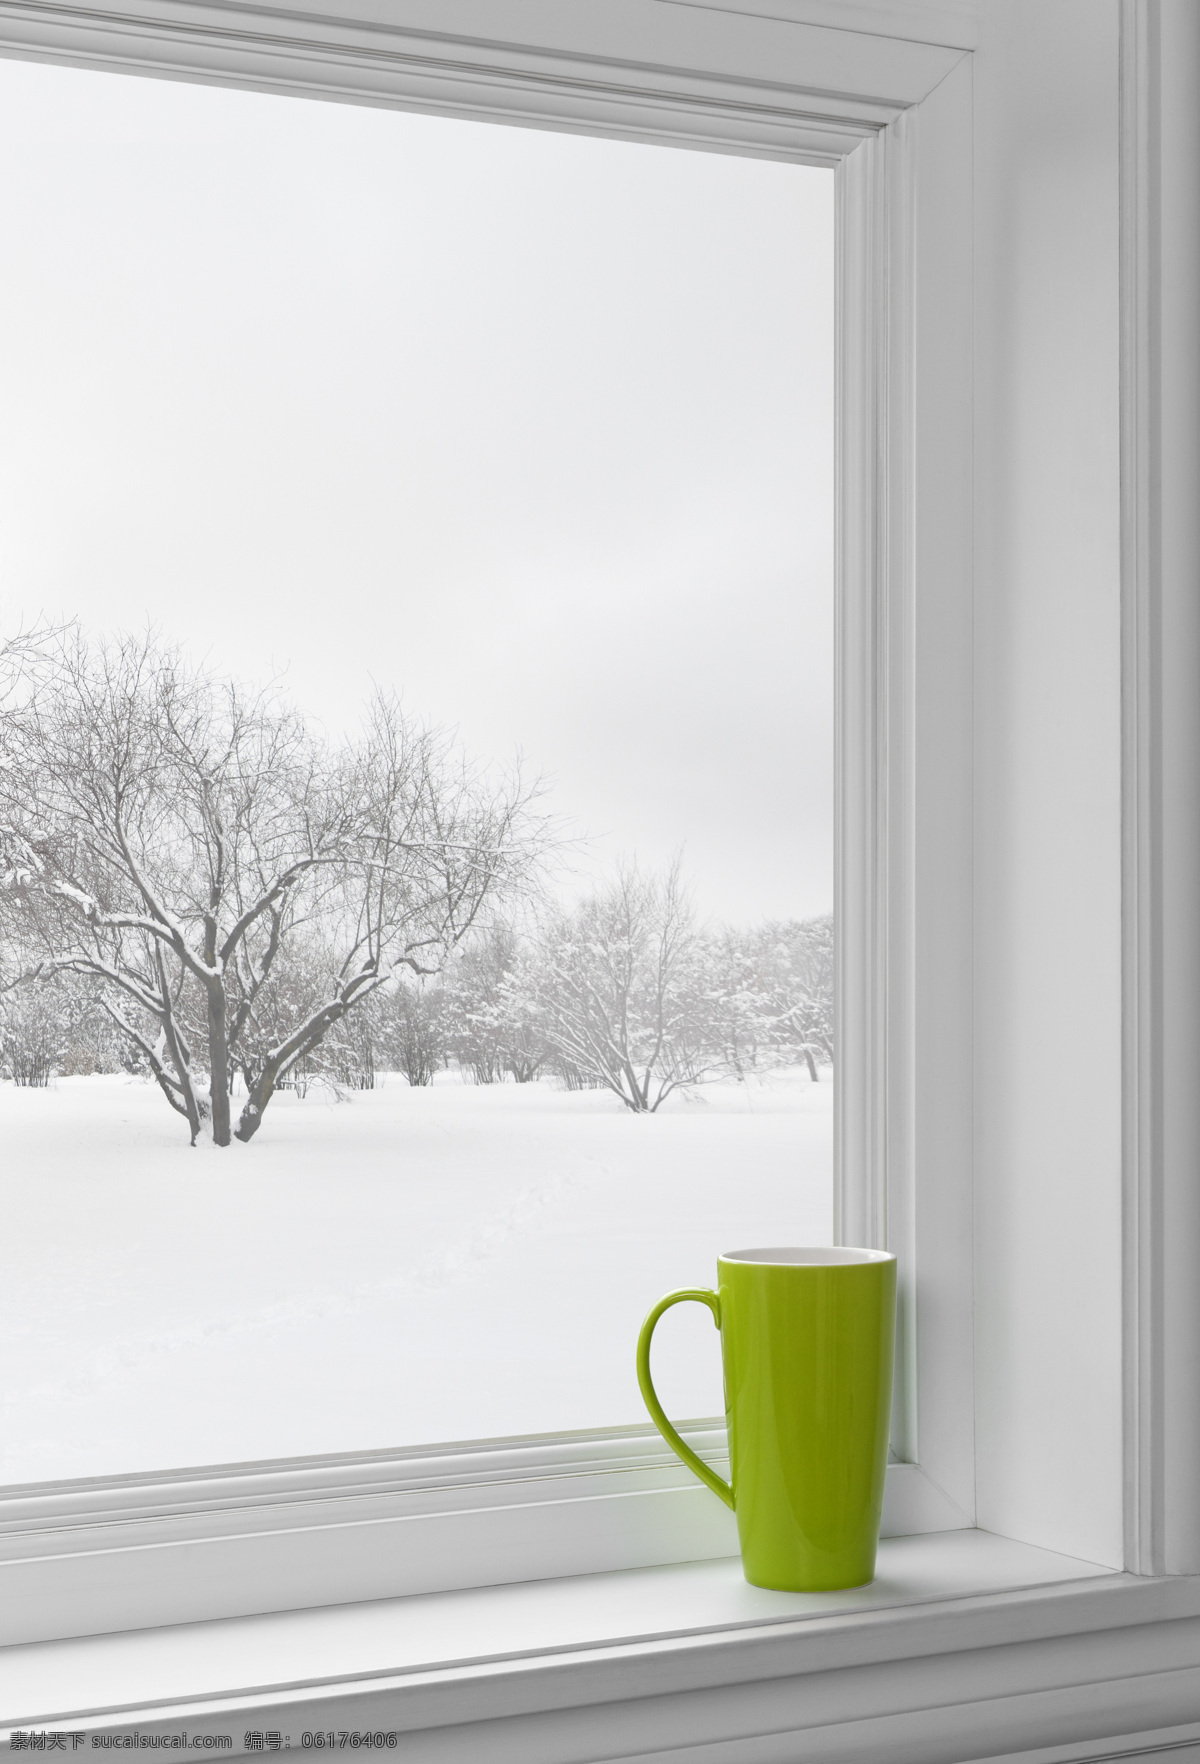 窗台 上 水杯 窗台上的水杯 冬天室内窗户 窗户景色 窗户设计 室内设计 窗户装饰 自然风景 窗户 环境家居